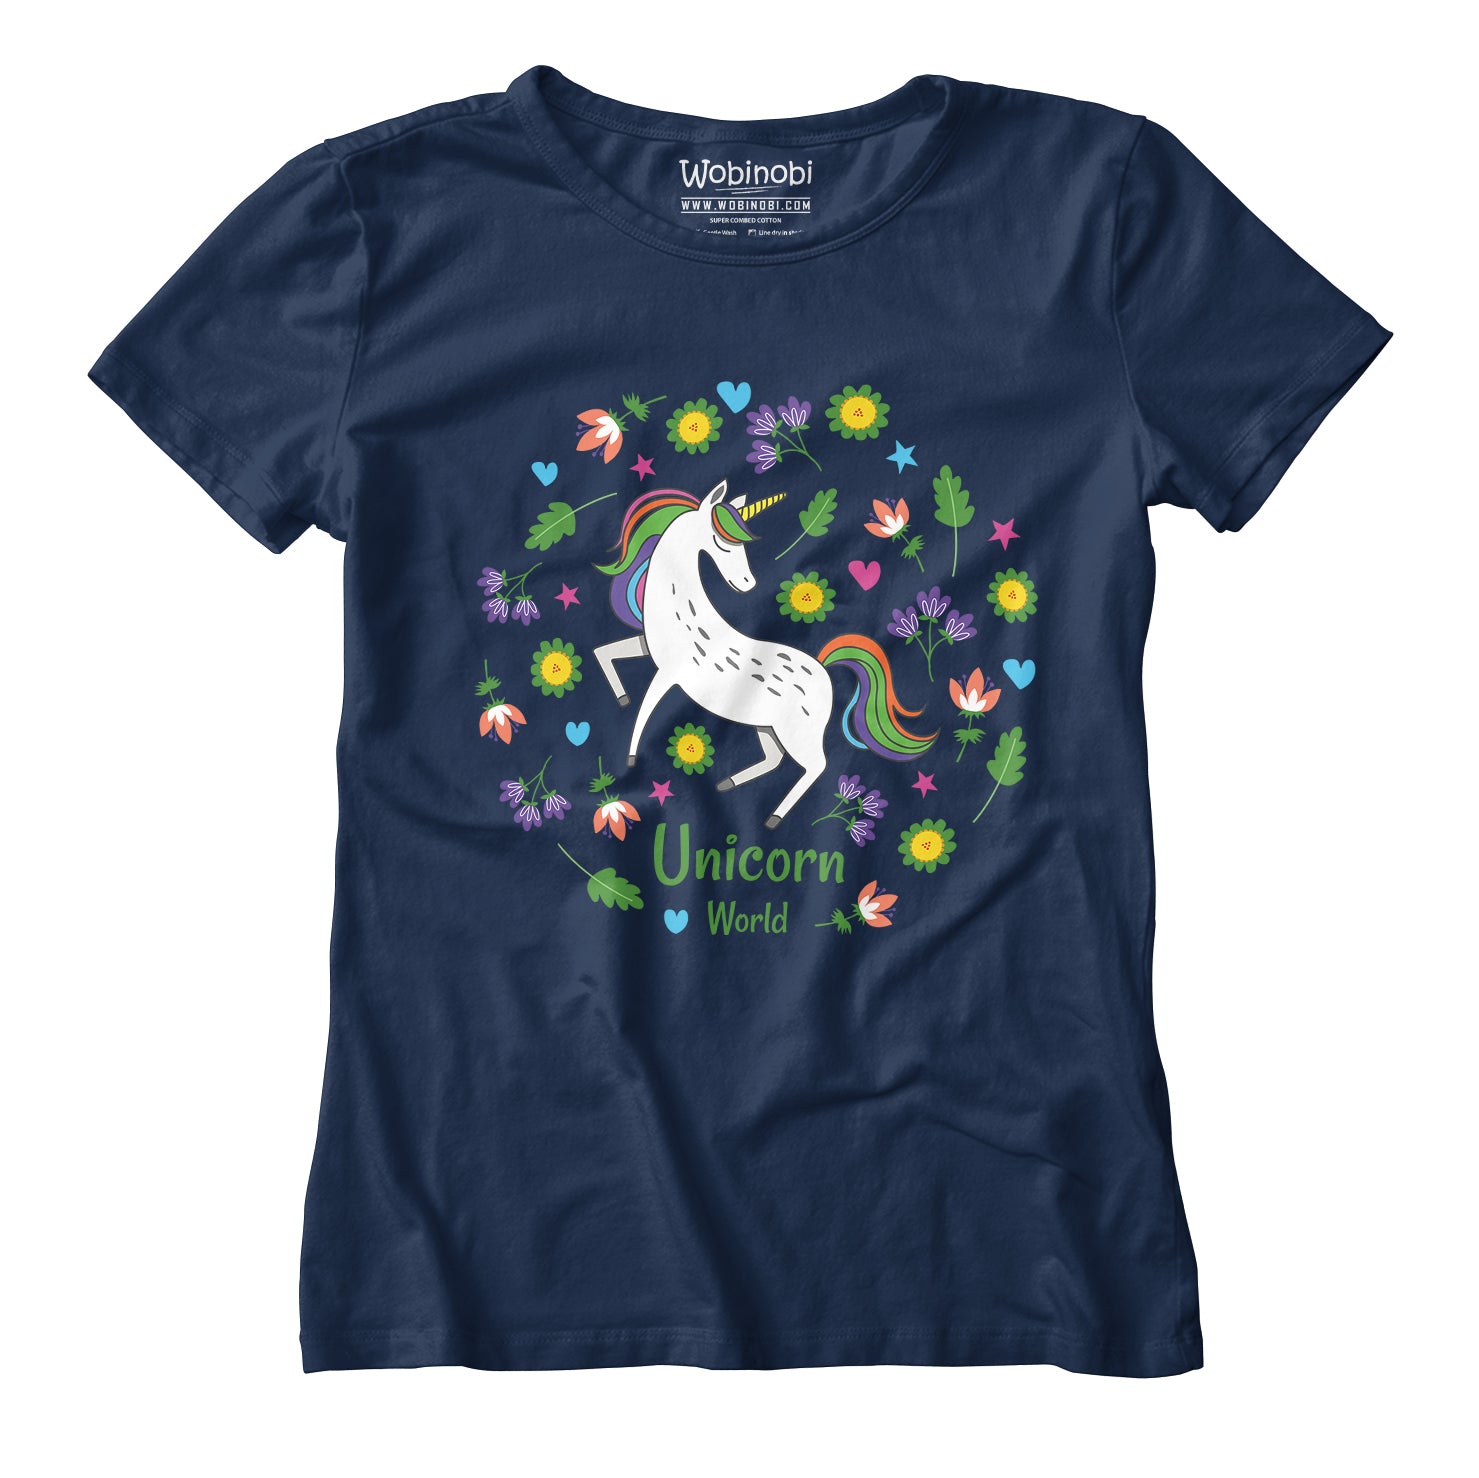 – World 100% Unicorn Cotton Wobinobi Girls T-Shirt